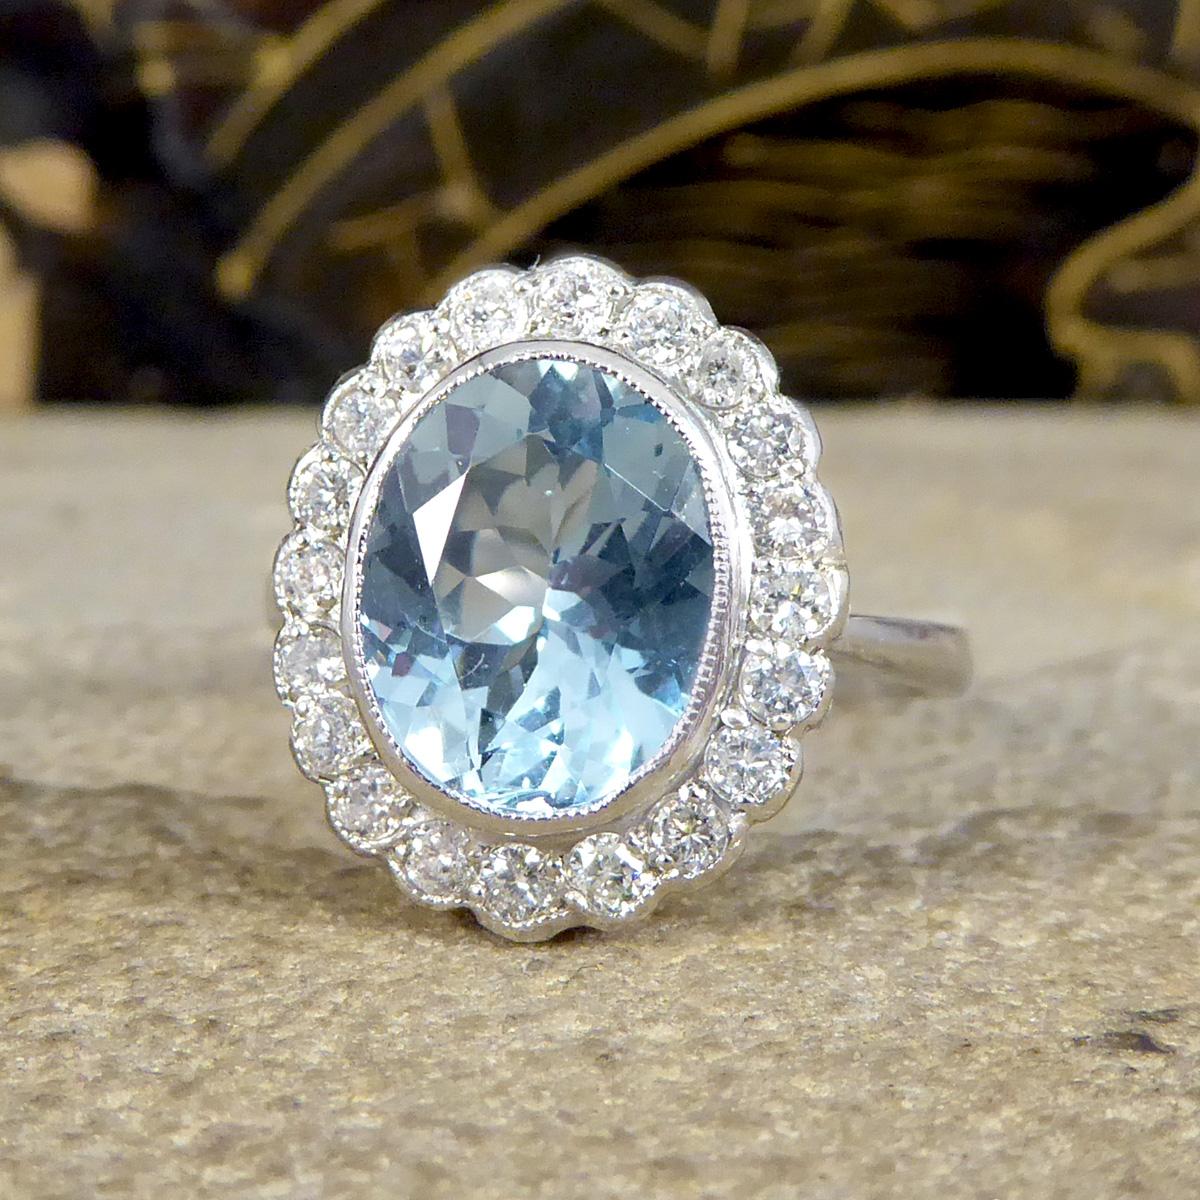 Brilliant Cut Edwardian Inspired 2.25 Carat Aquamarine and Diamond Cluster Ring in Platinum